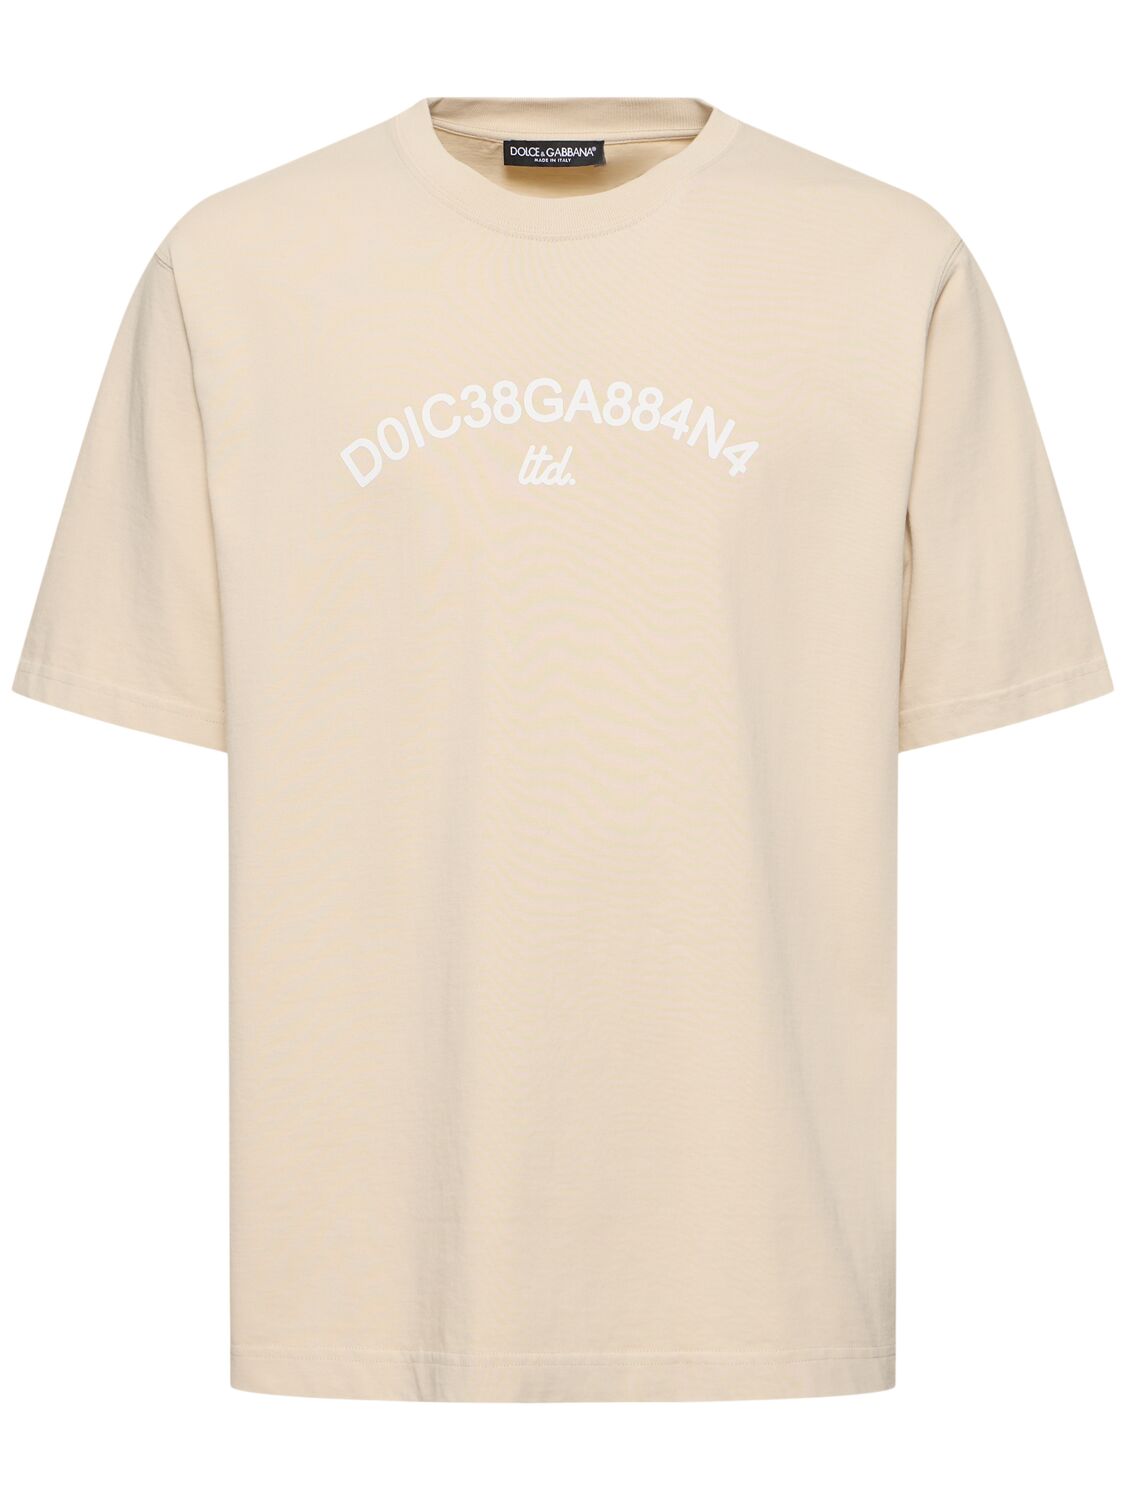 T-shirt Girocollo In Jersey - DOLCE & GABBANA - Modalova